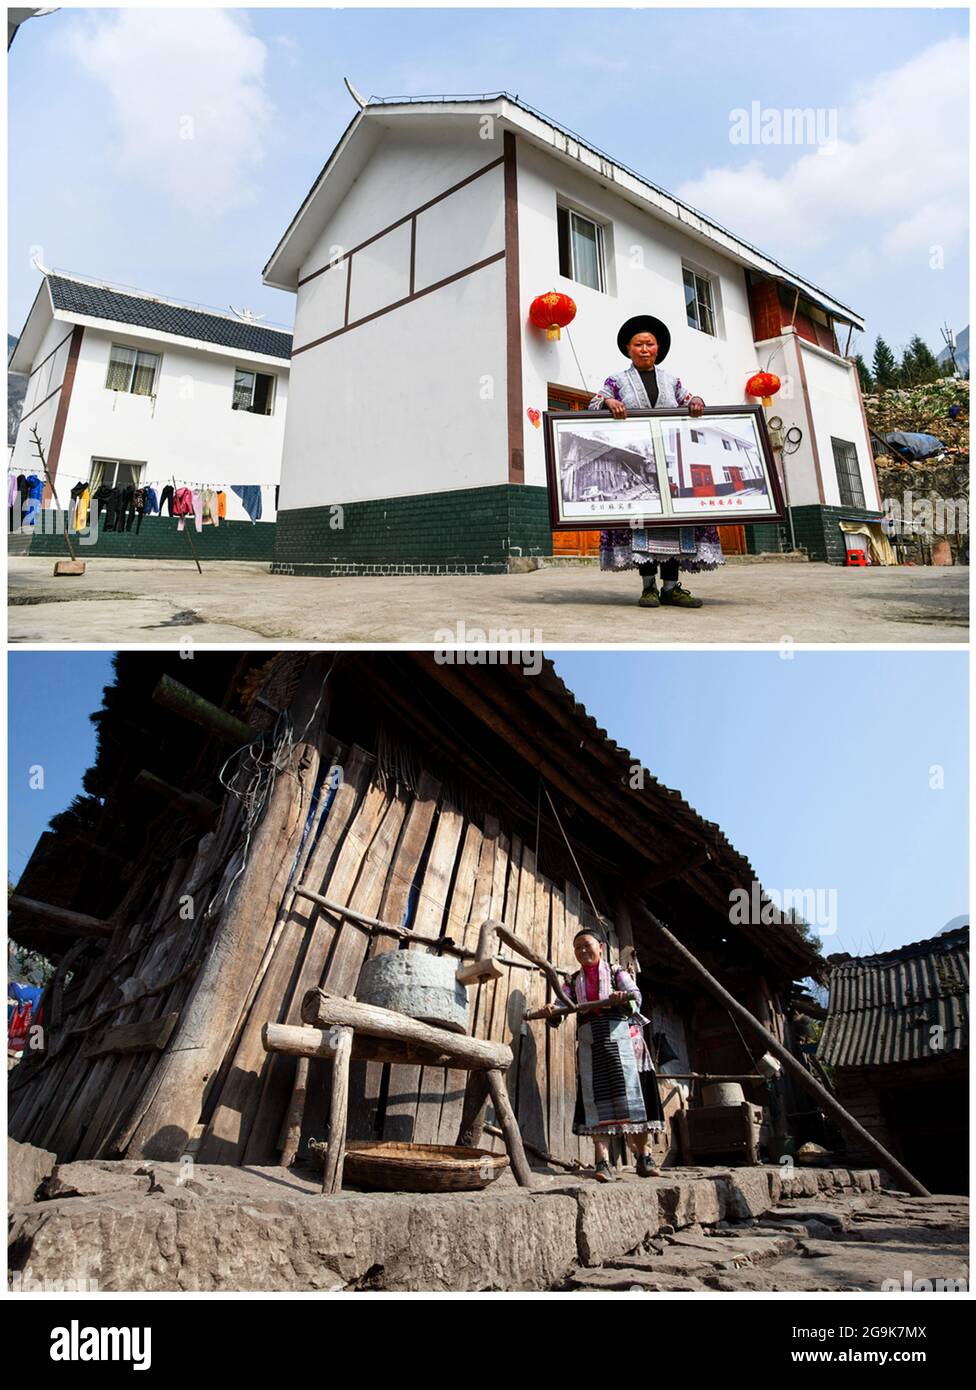 (210726) -- QIANXI, 26. Juli 2021 (Xinhua) -- auf diesem Combo-Foto zeigt der obere Teil, der vom Xinhua-Reporter Yang Wenbin am 20. Februar 2021 aufgenommen wurde, die Dorfbewohnerin Wang Xiangping vor ihrem neuen Wohnsitz in einem Umzugsort zur Armutsbekämpfung; Der untere Teil, den Shi Kaixin am 29. Dezember 2008 aufgenommen hat, zeigt Wang Xiangping beim Schleifen von Hühnern vor ihrem alten Wohnsitz im Dorf Huawu in der Gemeinde Xinren Miao, Stadt Qianxi, südwestlich der Provinz Guizhou in China. Das Dorf Huawu, das sich zwar durch eine einzigartige ethnische Kultur der Miao und einen herrlichen Blick auf die Berge mit riesigen Gewässern rühmt, verfügte einst über ein Armutsverhältnis von A Stockfoto